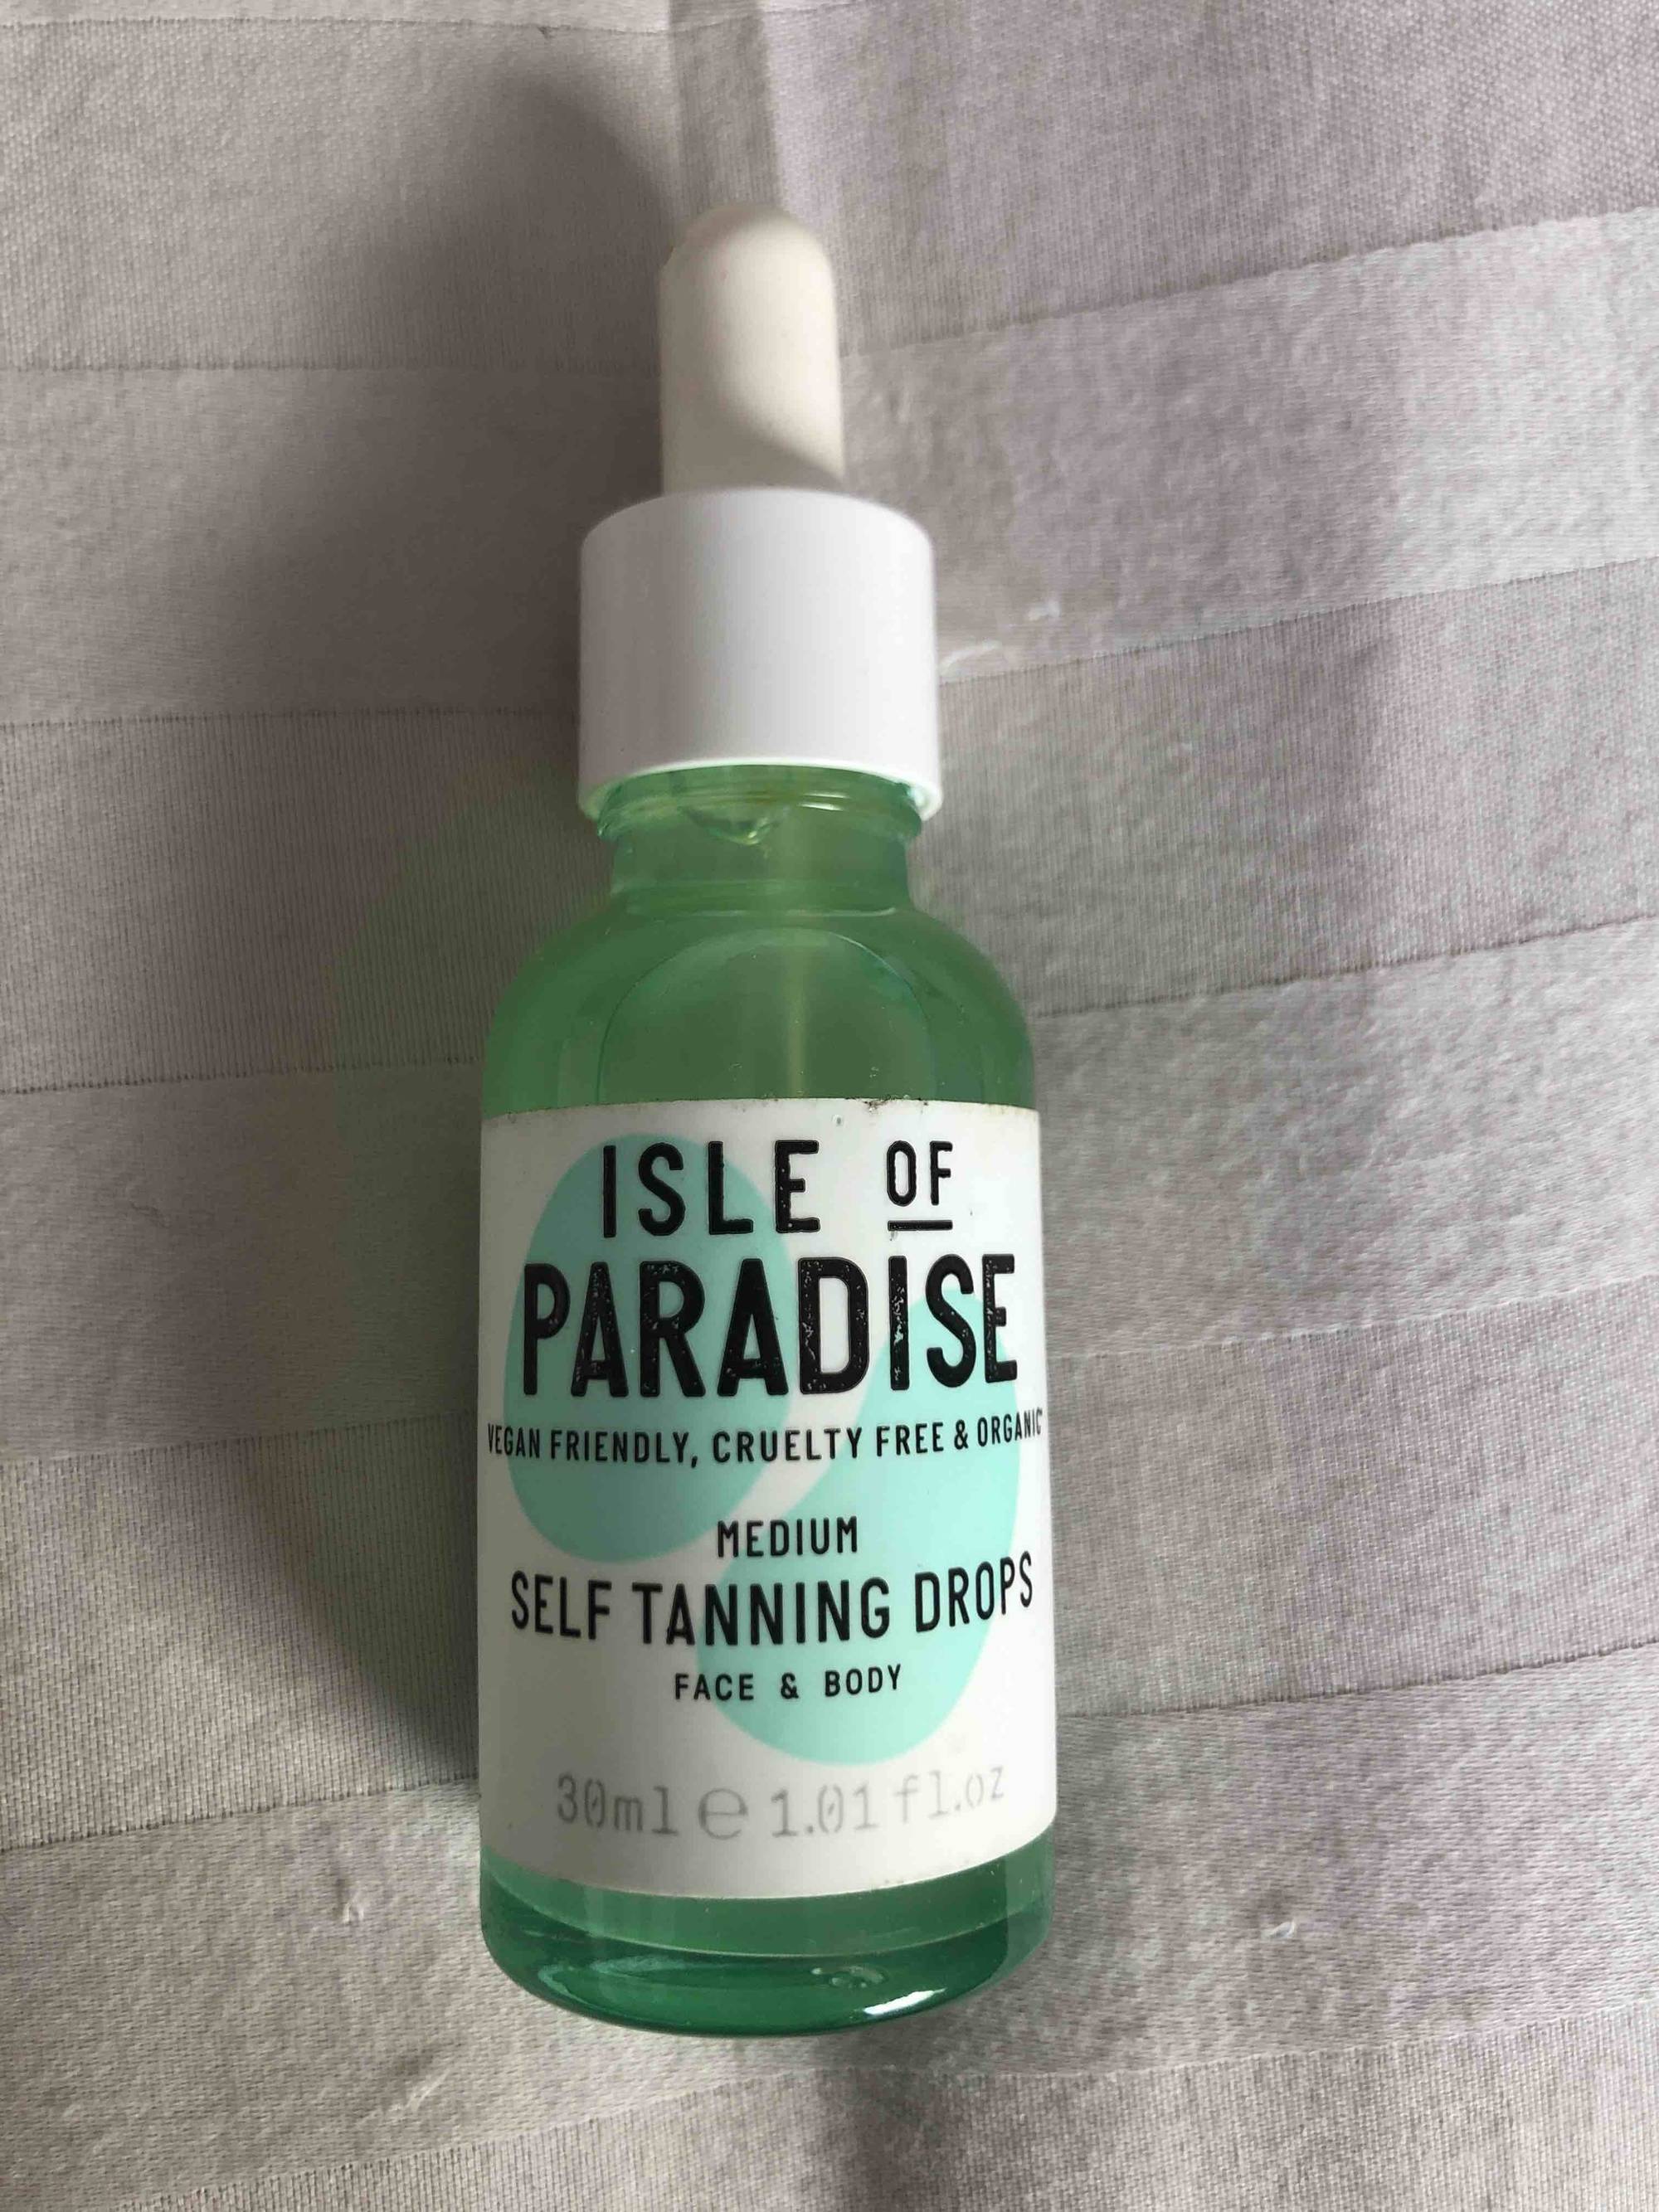 ISLE OF PARADISE - Medium self tanning drops face & body